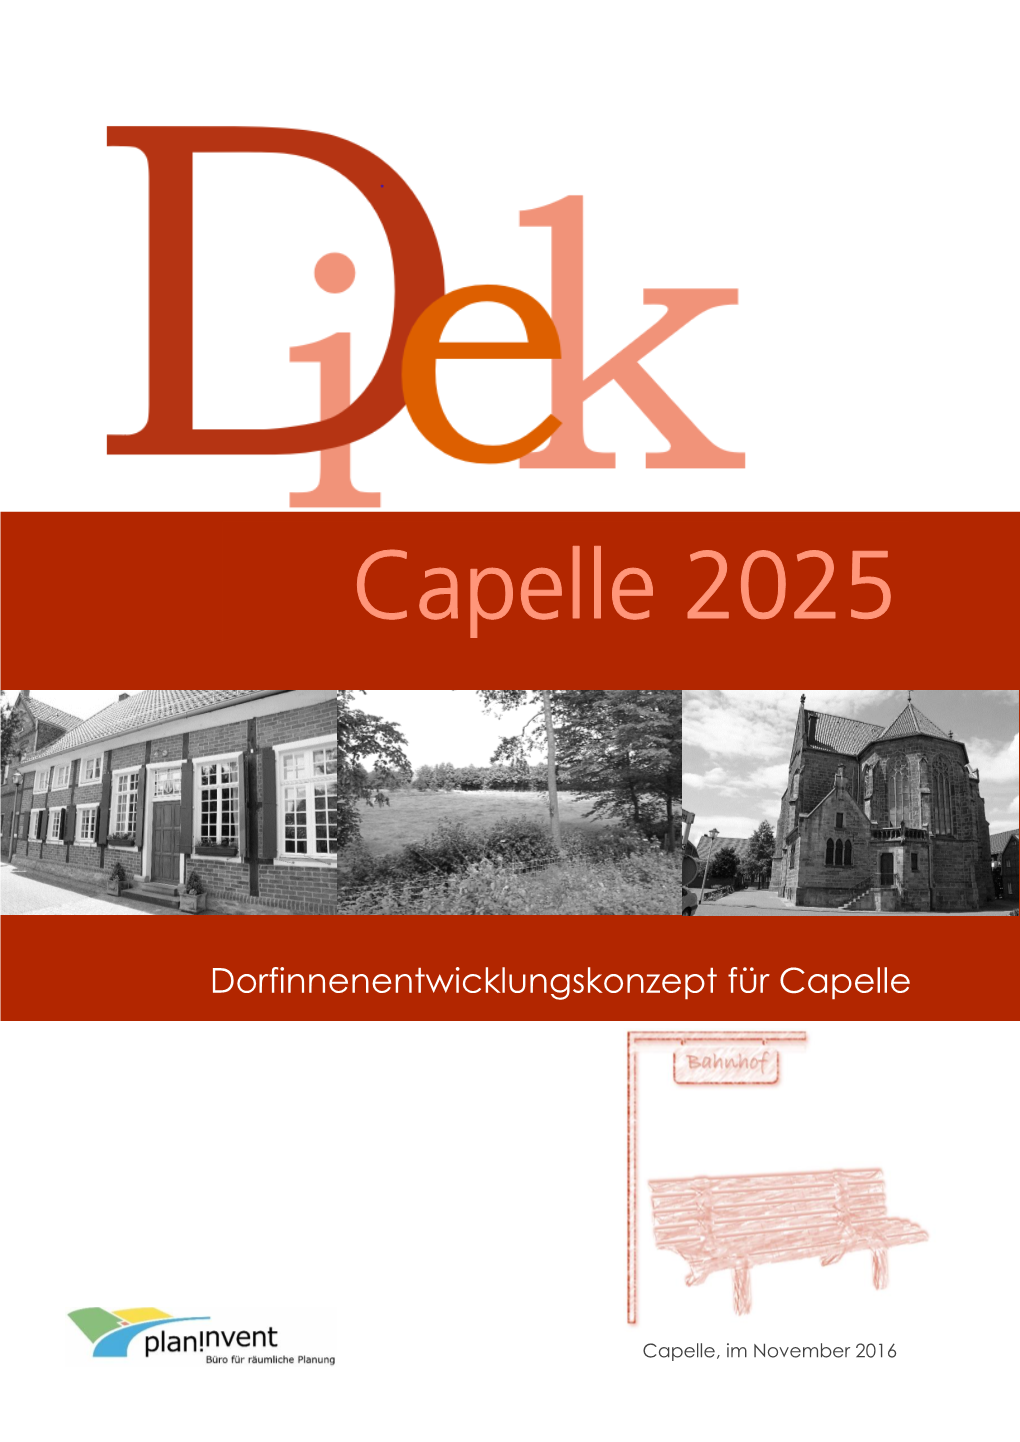 DIEK Capelle 2025 War Ein in Hohem Maße Partizipativer Prozess, in Den Sich Zahlreiche Bürge- Rinnen Und Bürger Aktiv Eingebracht Haben